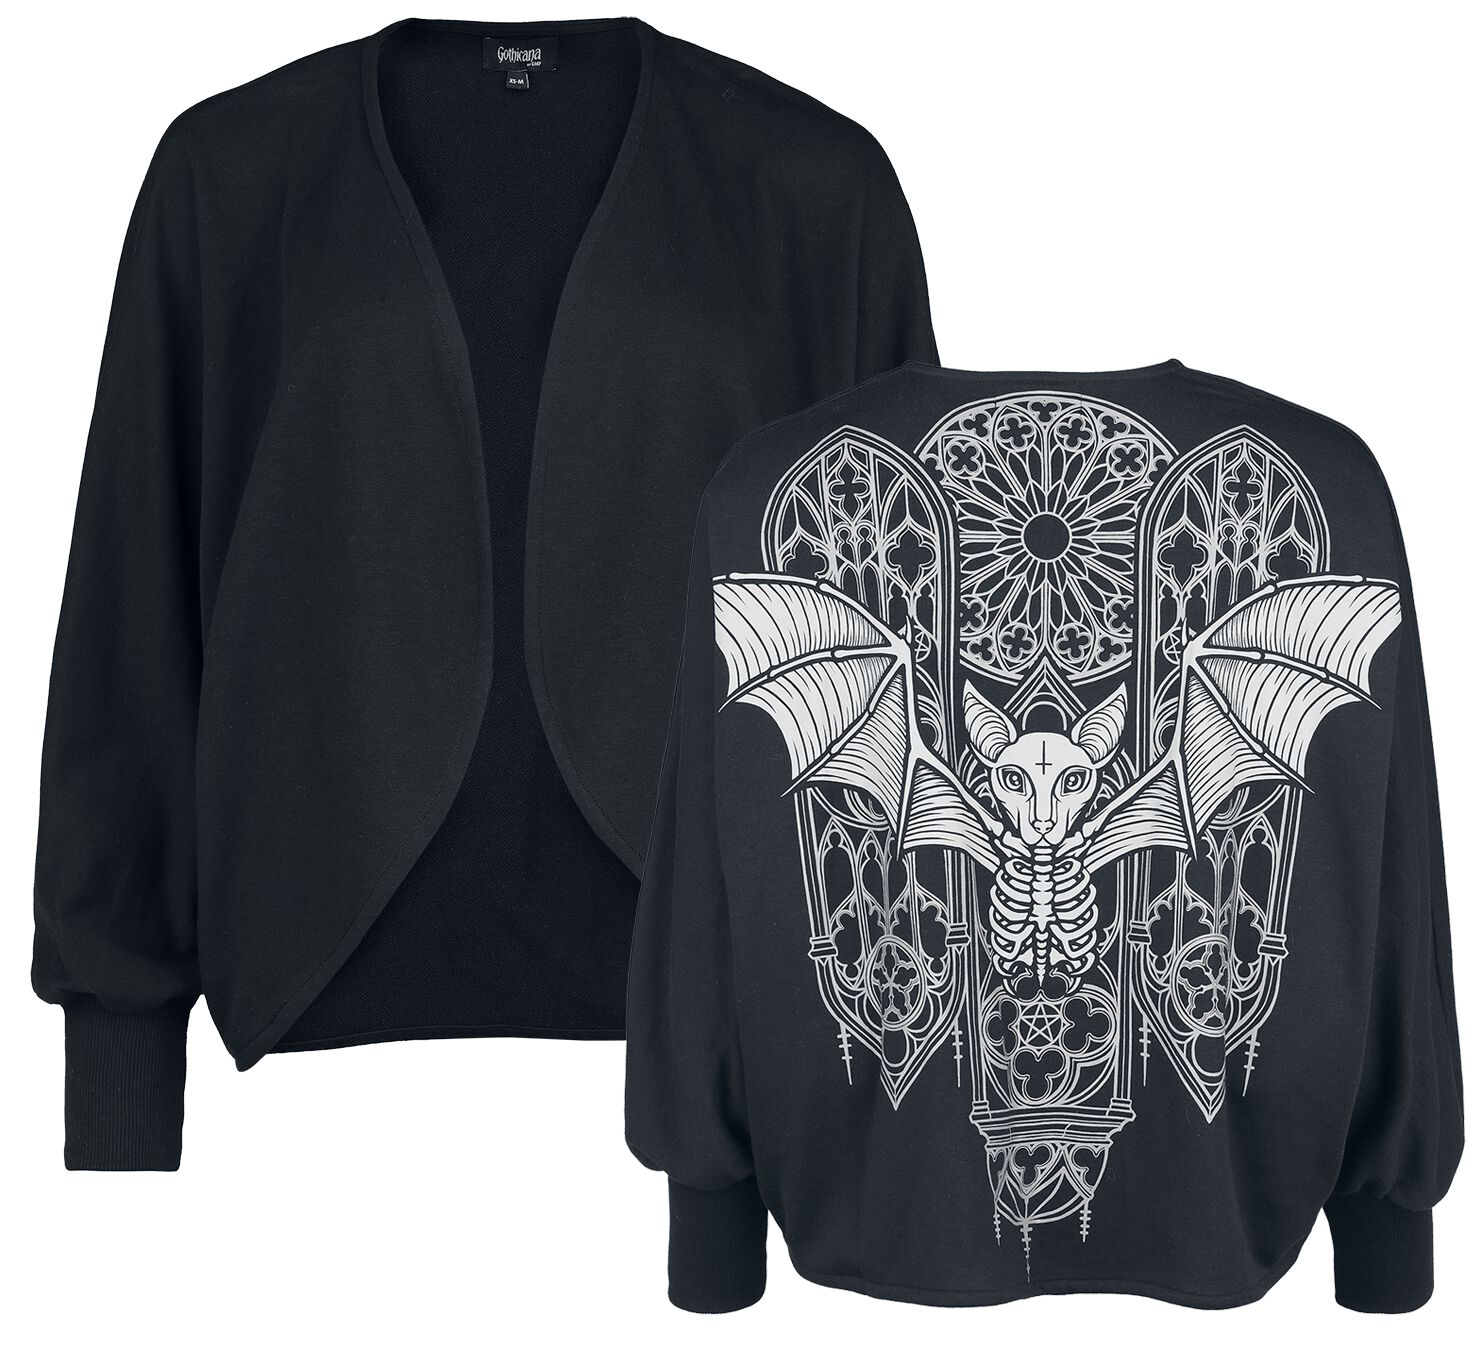 Gothicana by EMP - Gothic Cardigan - Cardigan with Batwing Sleeves - XS-M bis L-2XL - für Damen - Größe XS-M - schwarz